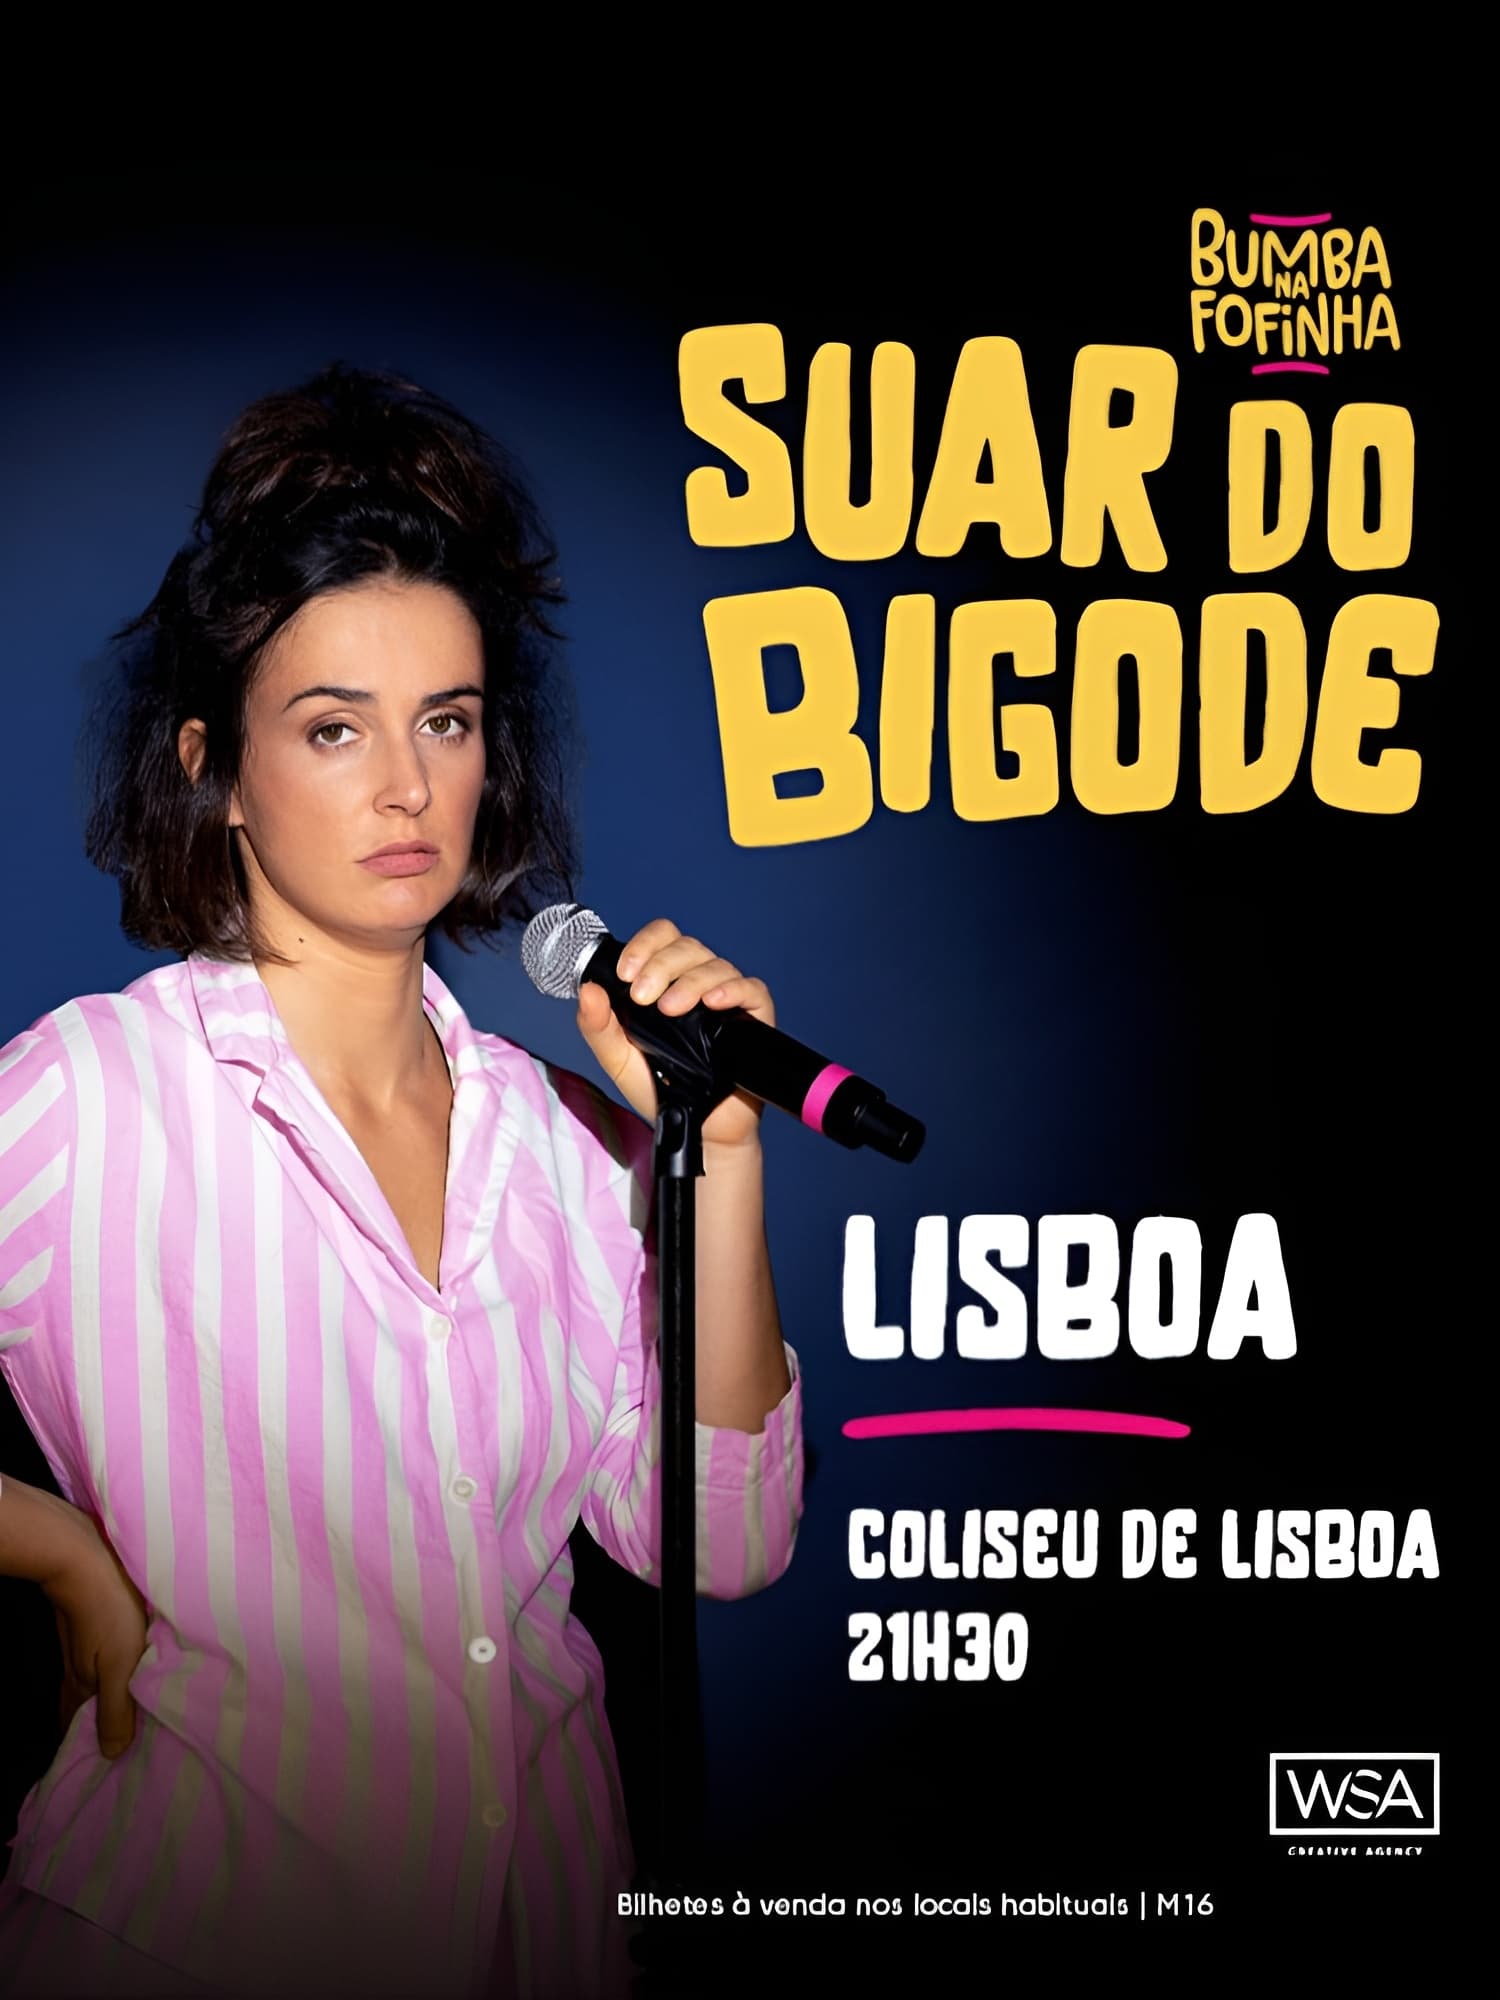 Bumba na Fofinha - Suar do Bigode ao vivo no Coliseu de Lisboa